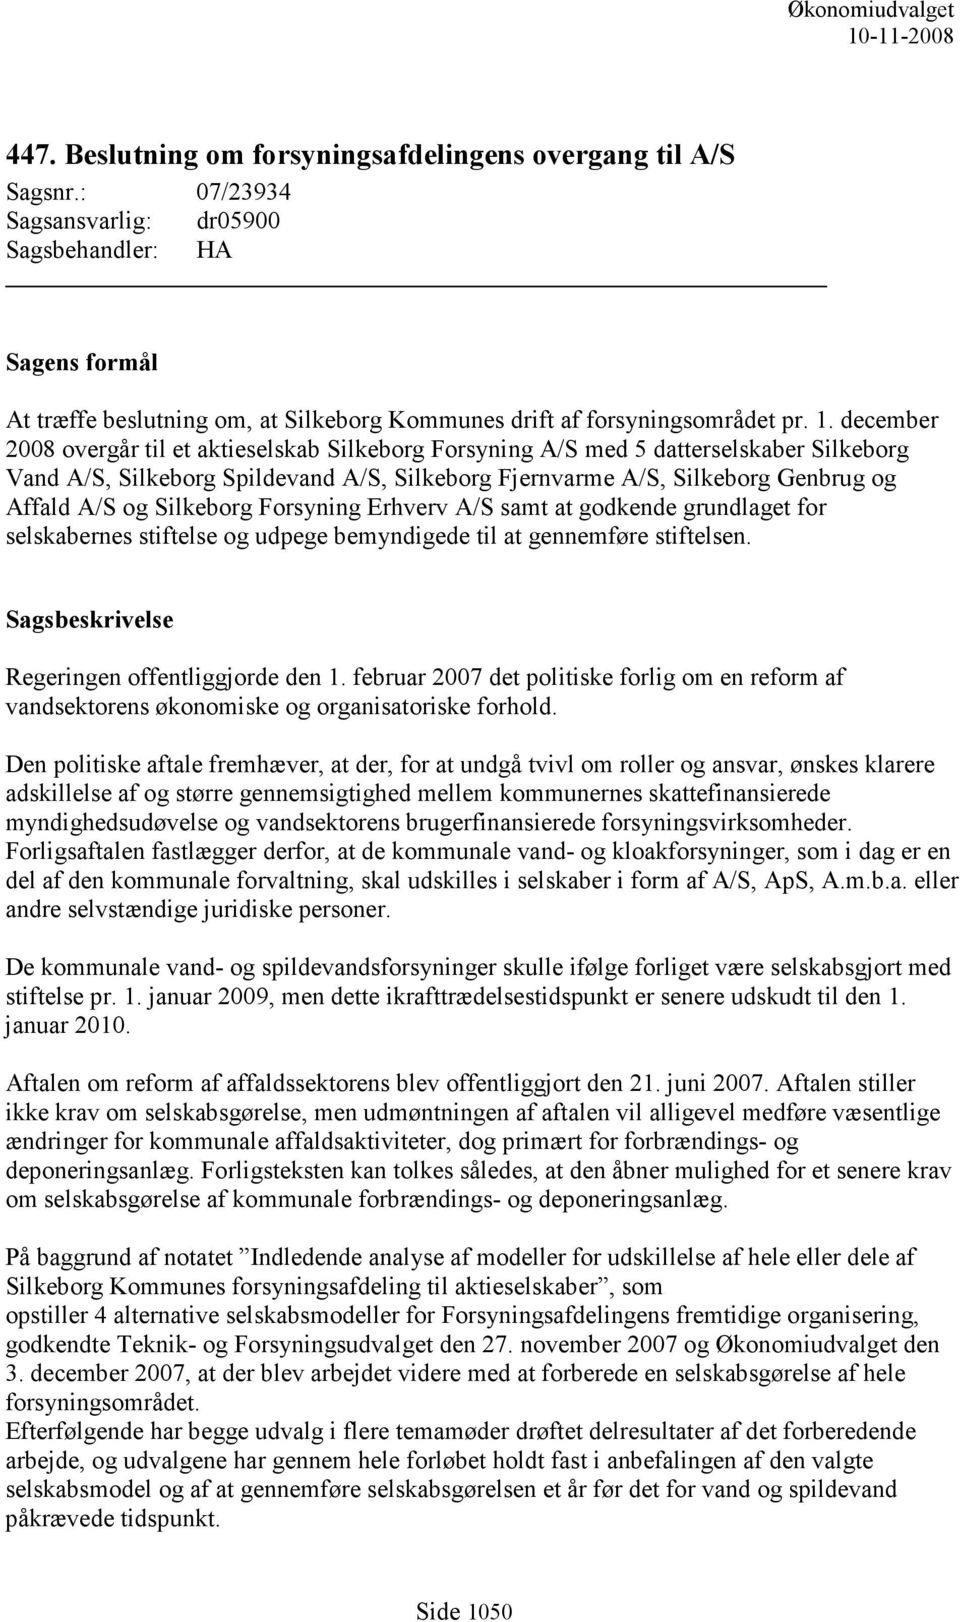 december 2008 overgår til et aktieselskab Silkeborg Forsyning A/S med 5 datterselskaber Silkeborg Vand A/S, Silkeborg Spildevand A/S, Silkeborg Fjernvarme A/S, Silkeborg Genbrug og Affald A/S og